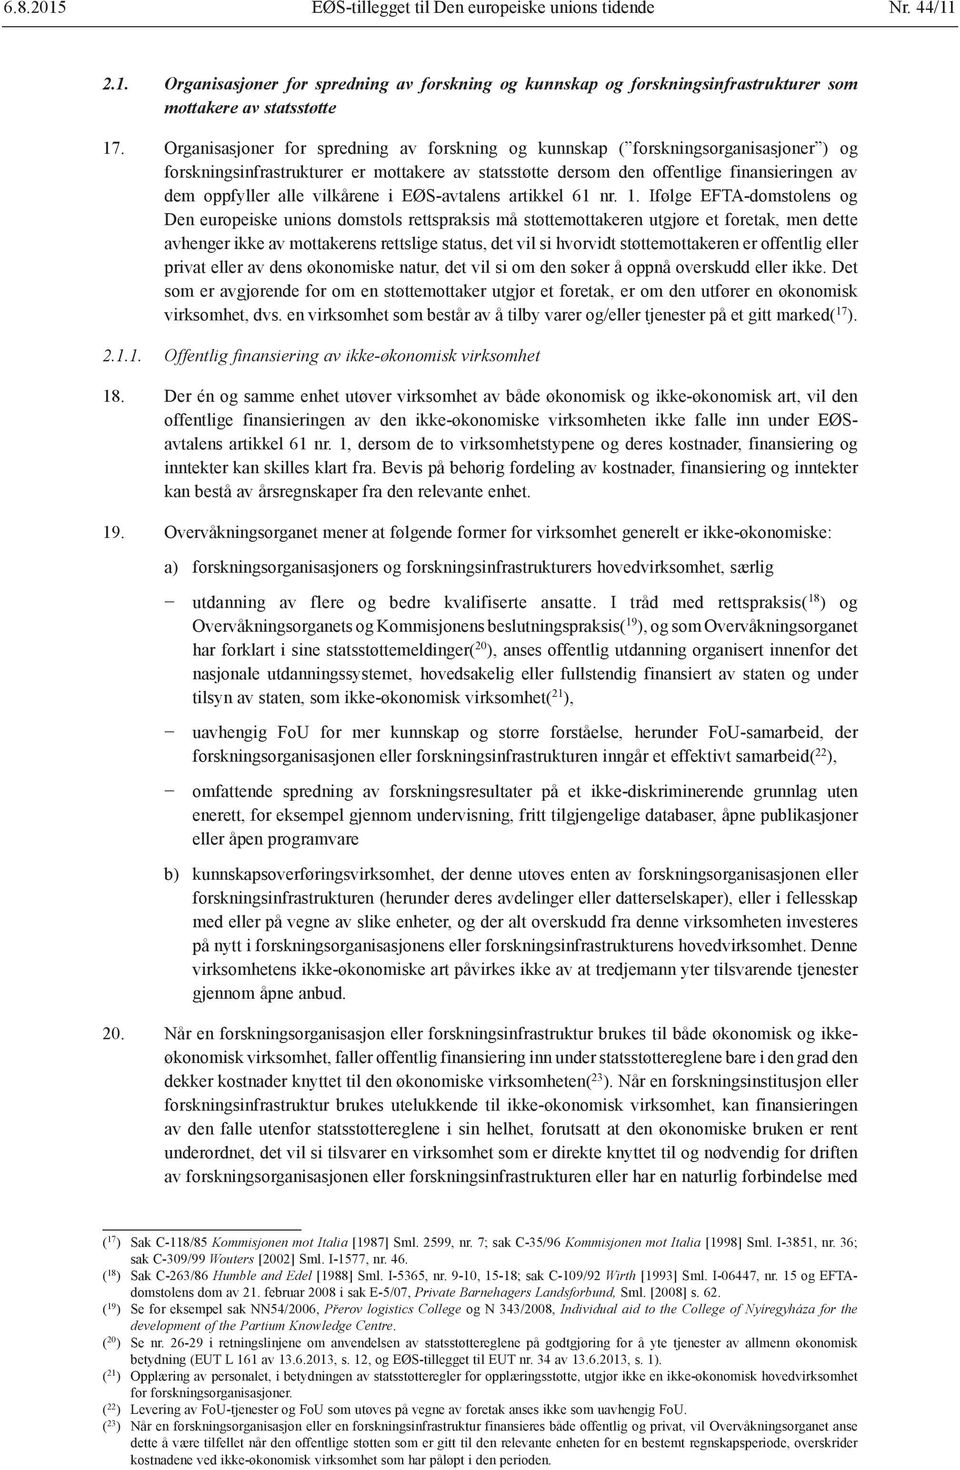 vilkårene i EØS-avtalens artikkel 61 nr. 1.